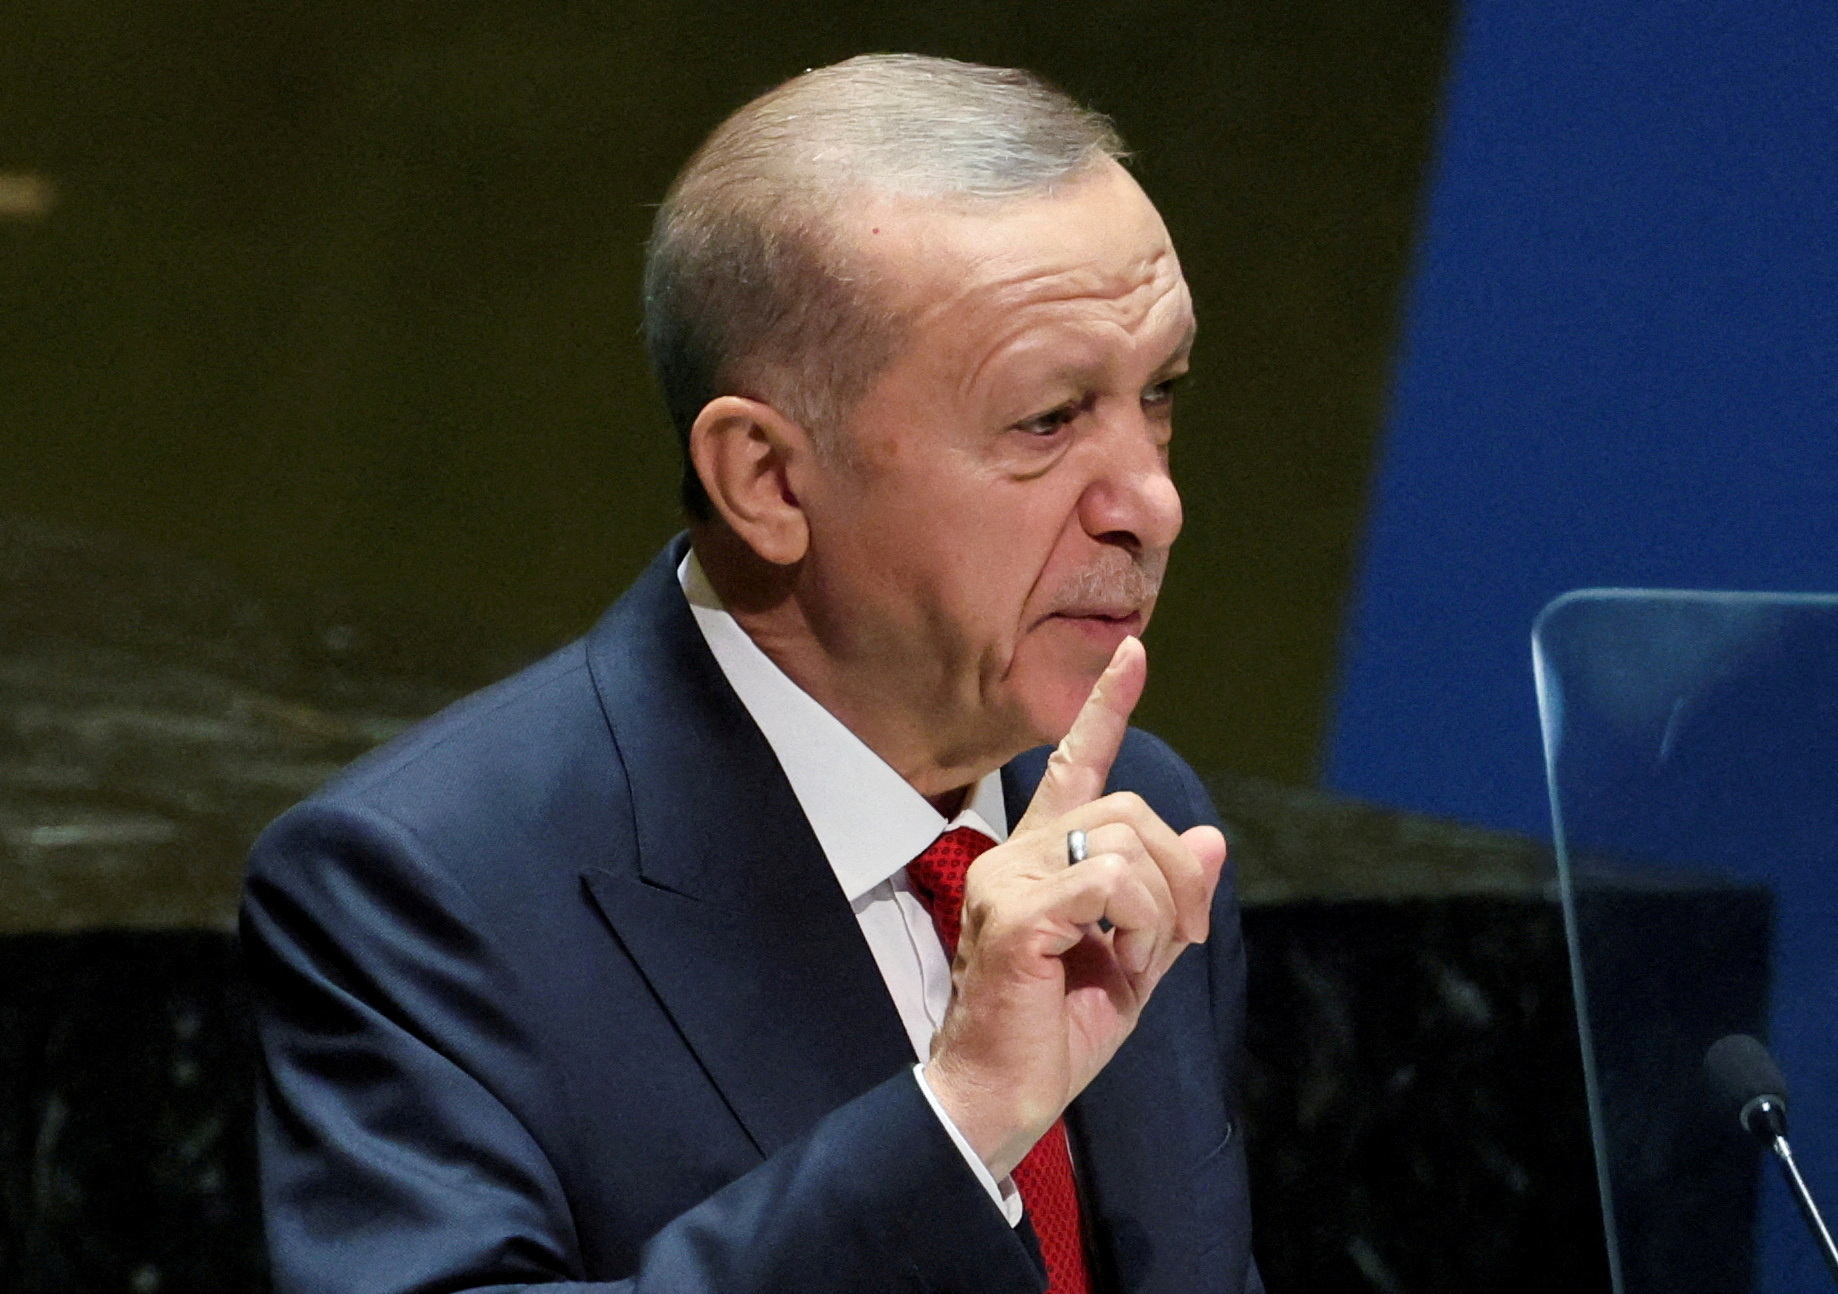 Türk lider Erdoğan, İsrail’in Gazze’deki Hamas’a tepkisinin ‘katliam’ olduğunu söyledi